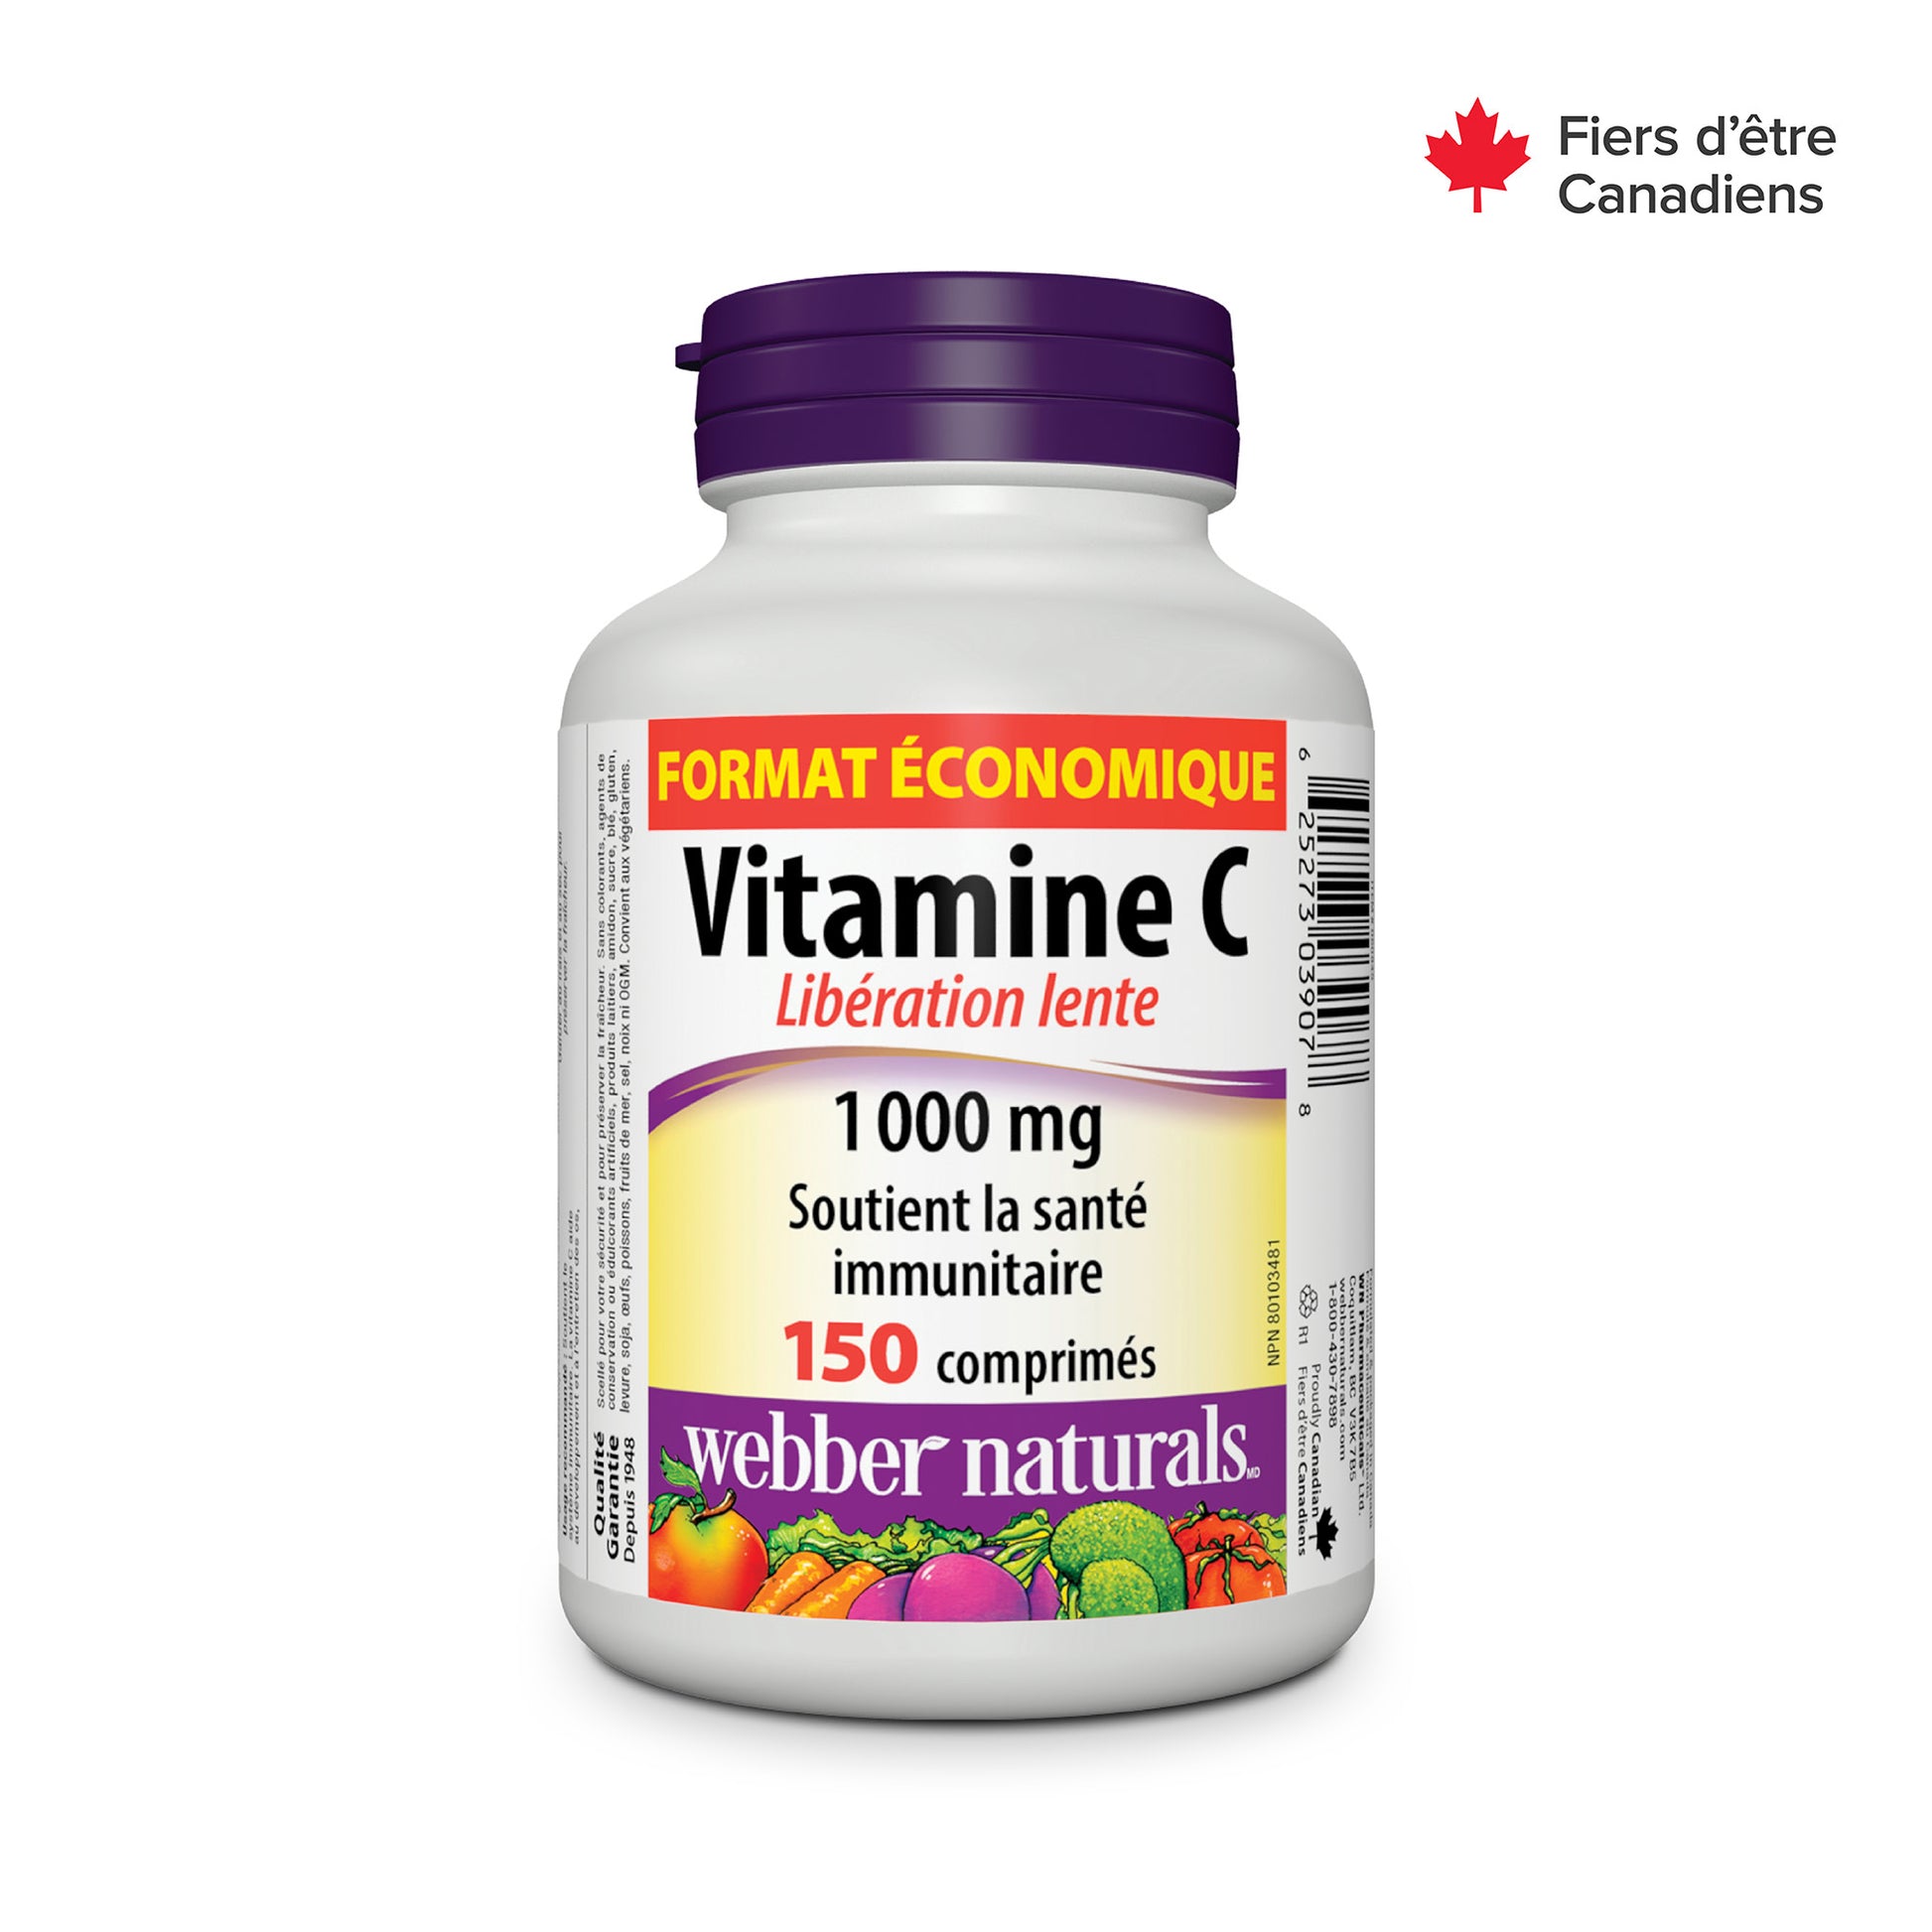 Vitamine C Libération lente for Webber Naturals|v|hi-res|WN3907